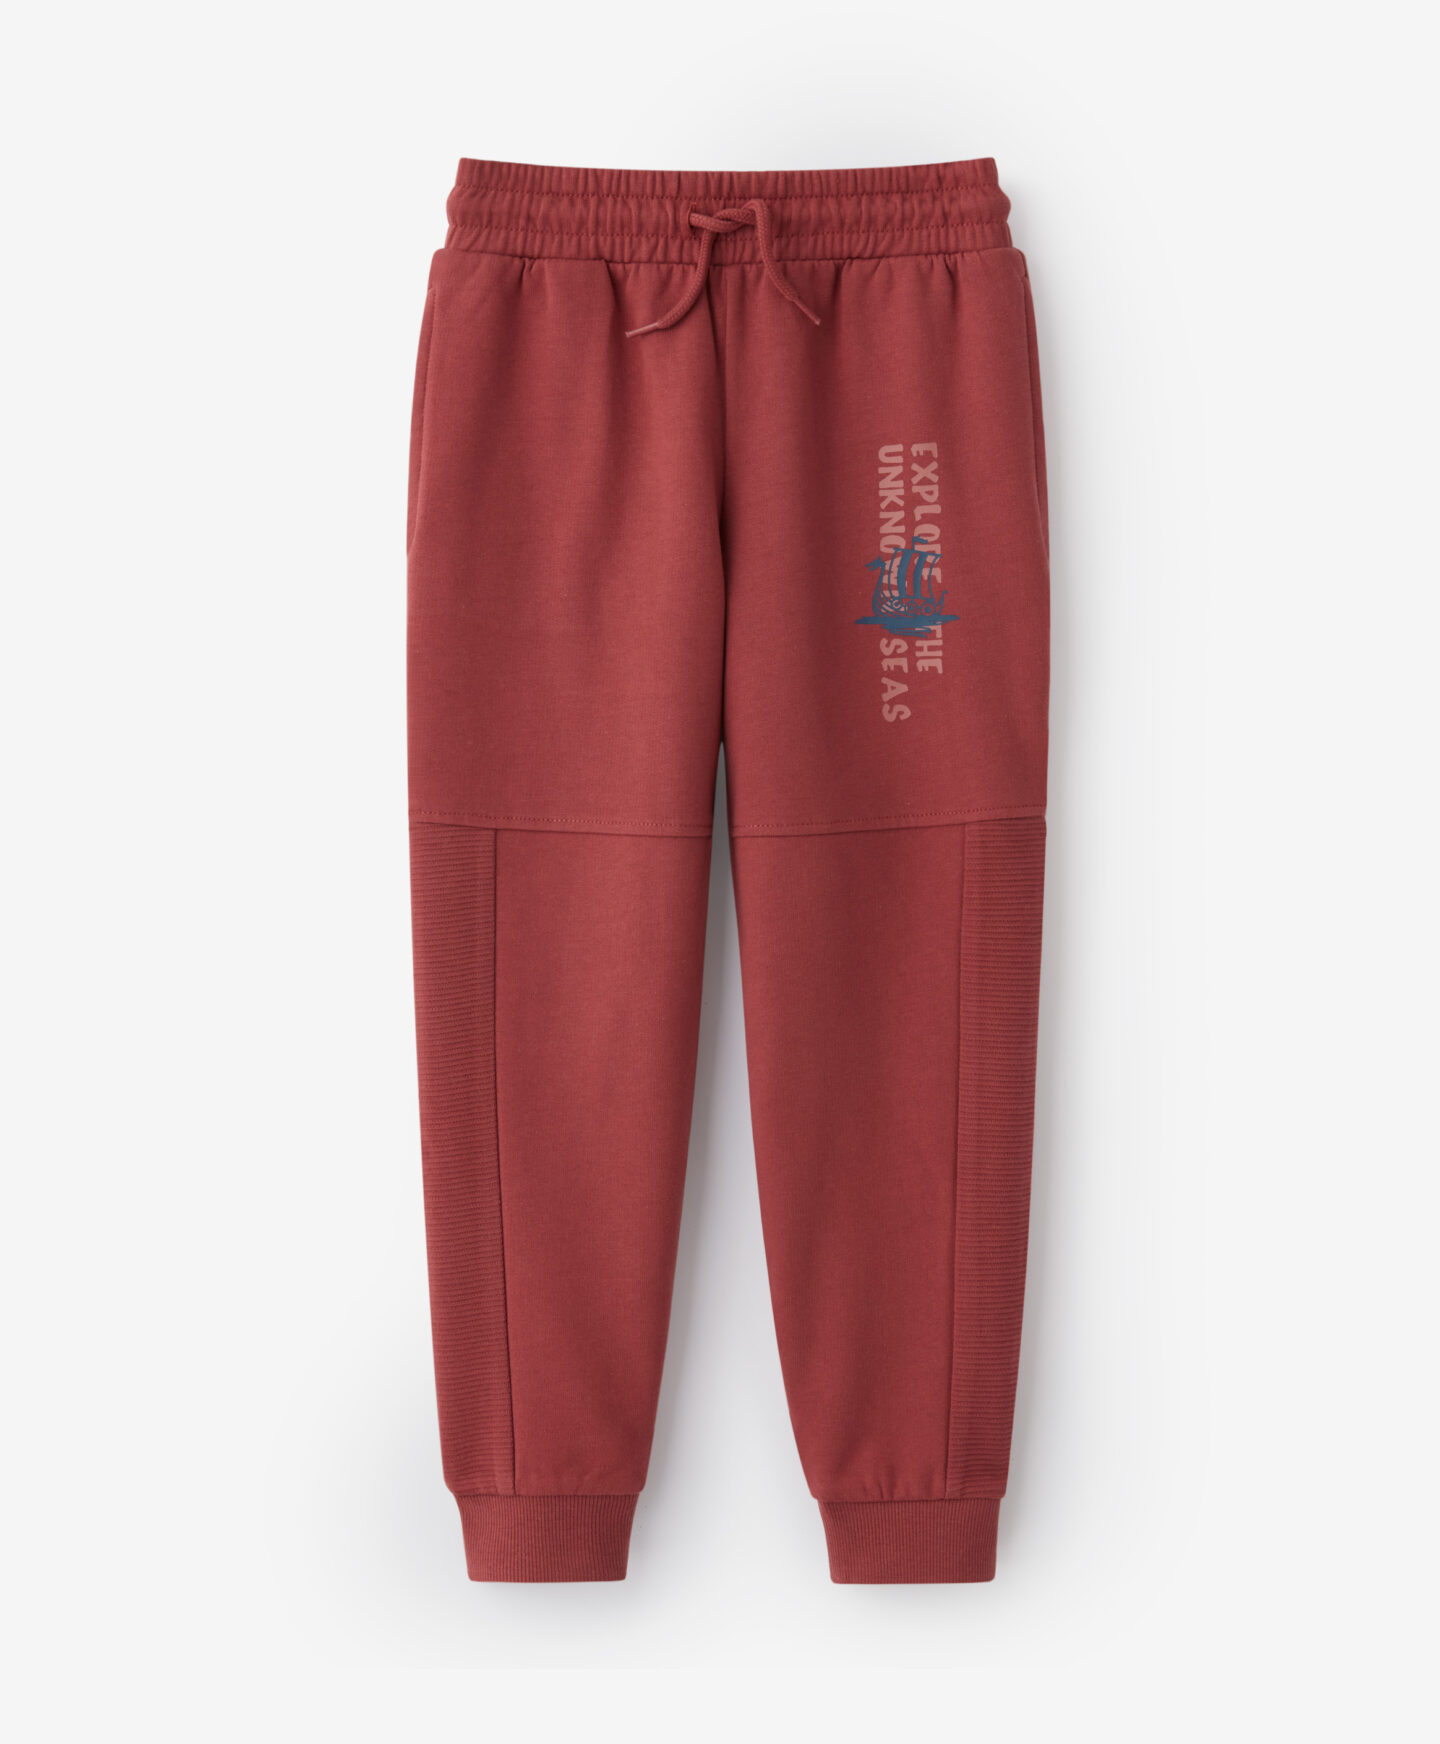 Pantaloni de trening roșii, 100% bumbac, culoare: roșu, mărimi: 104-134 cm